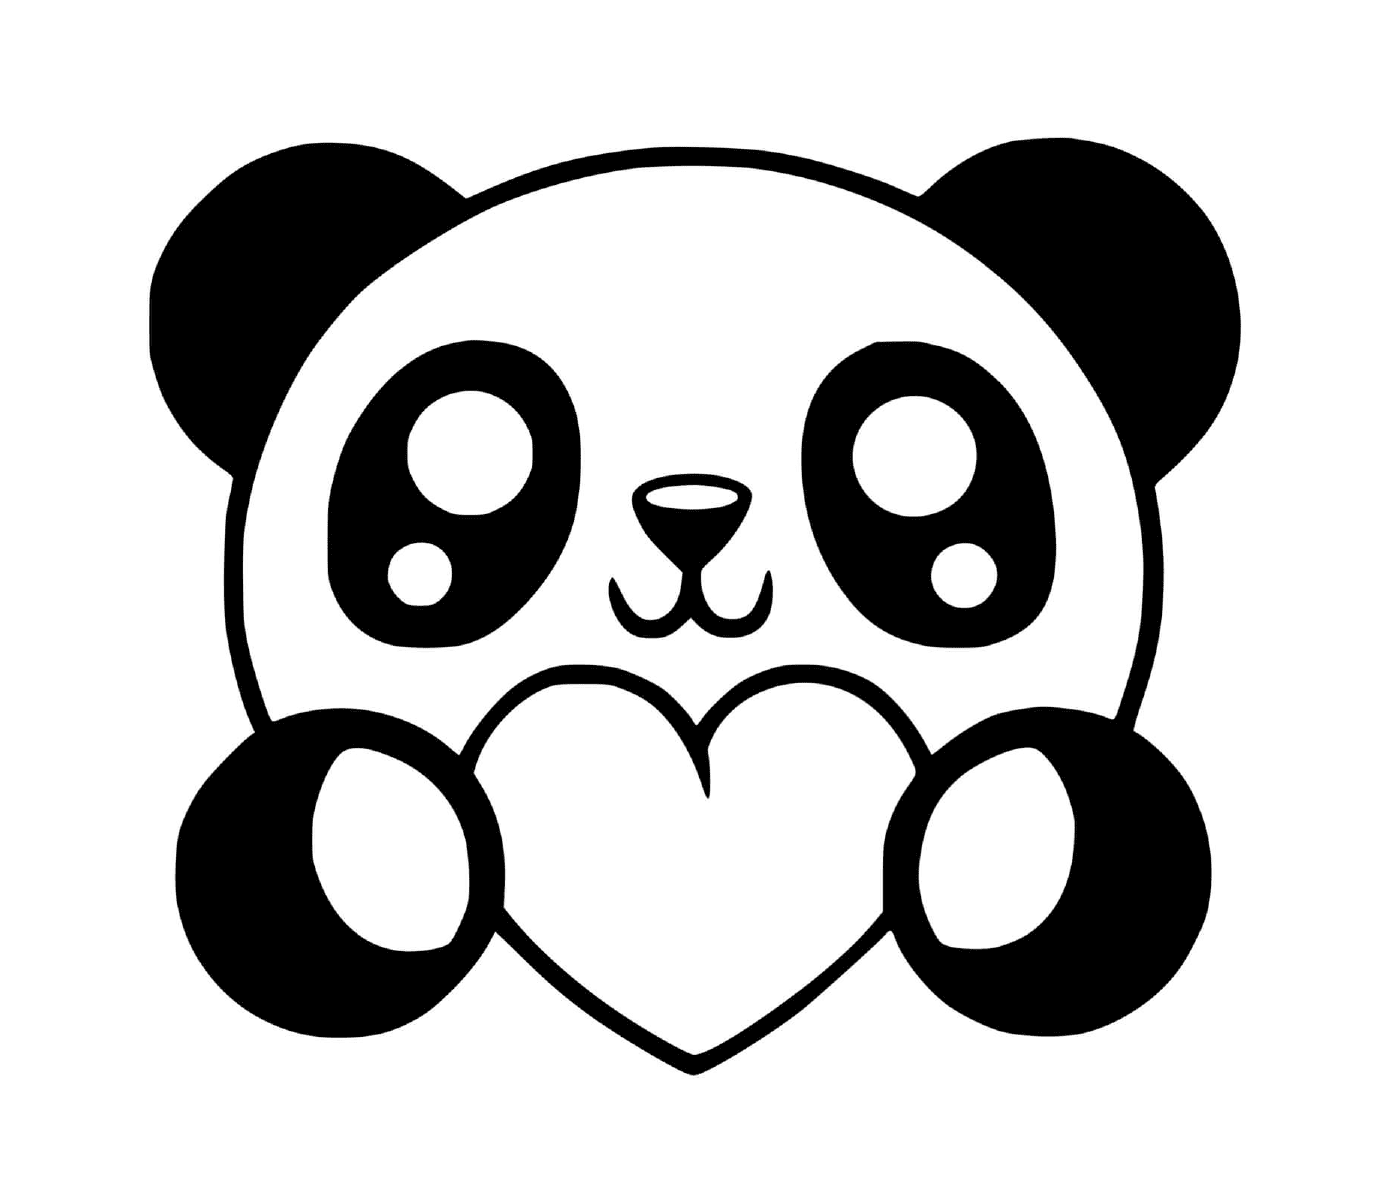  Panda corazón kawaii, amor y dulzura 